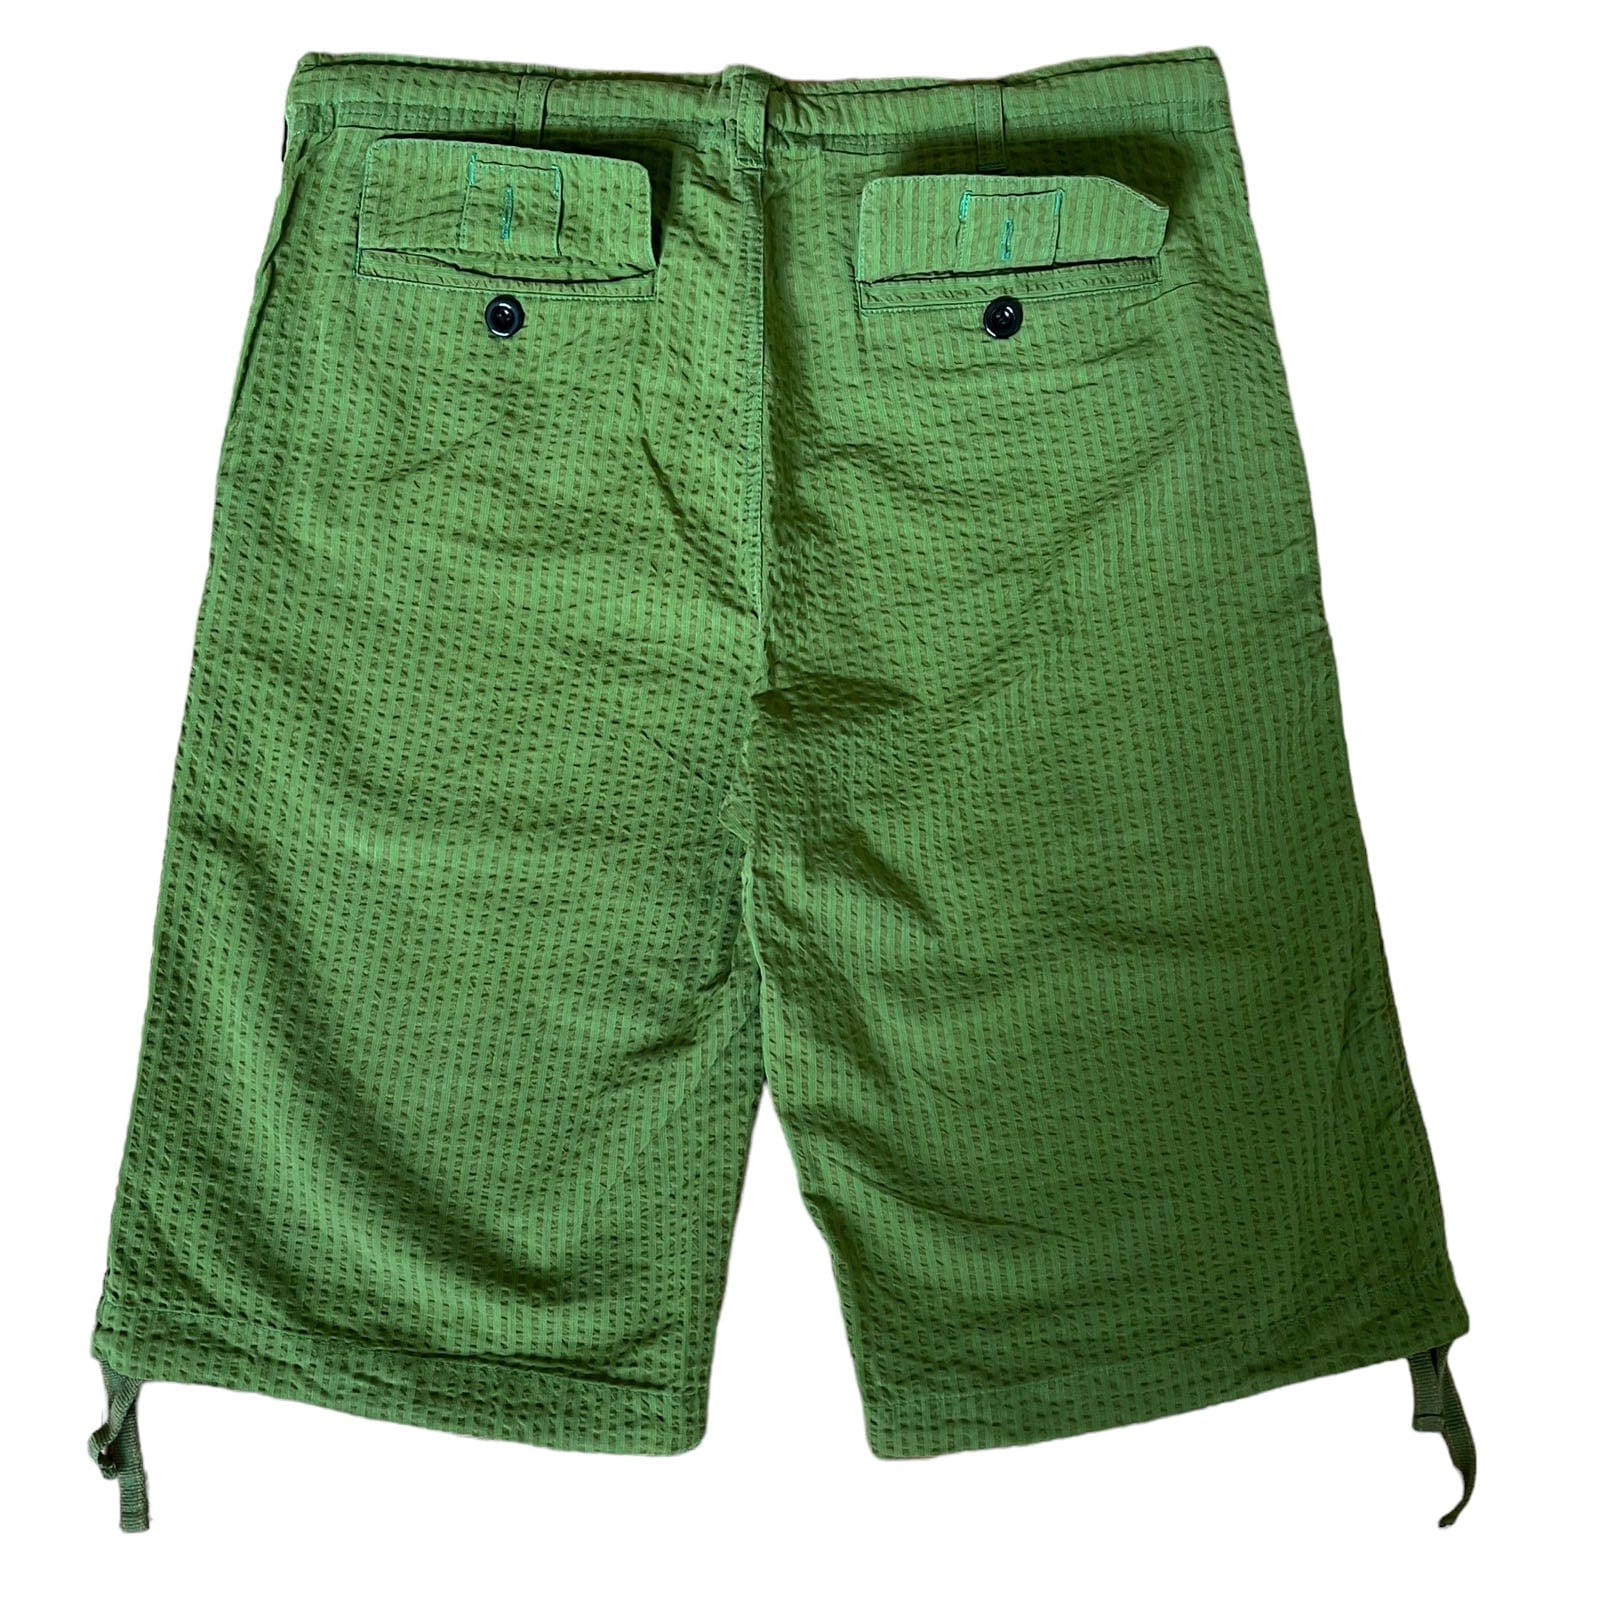 SKIDZ Shorts Seersucker Shorts - Green Striped